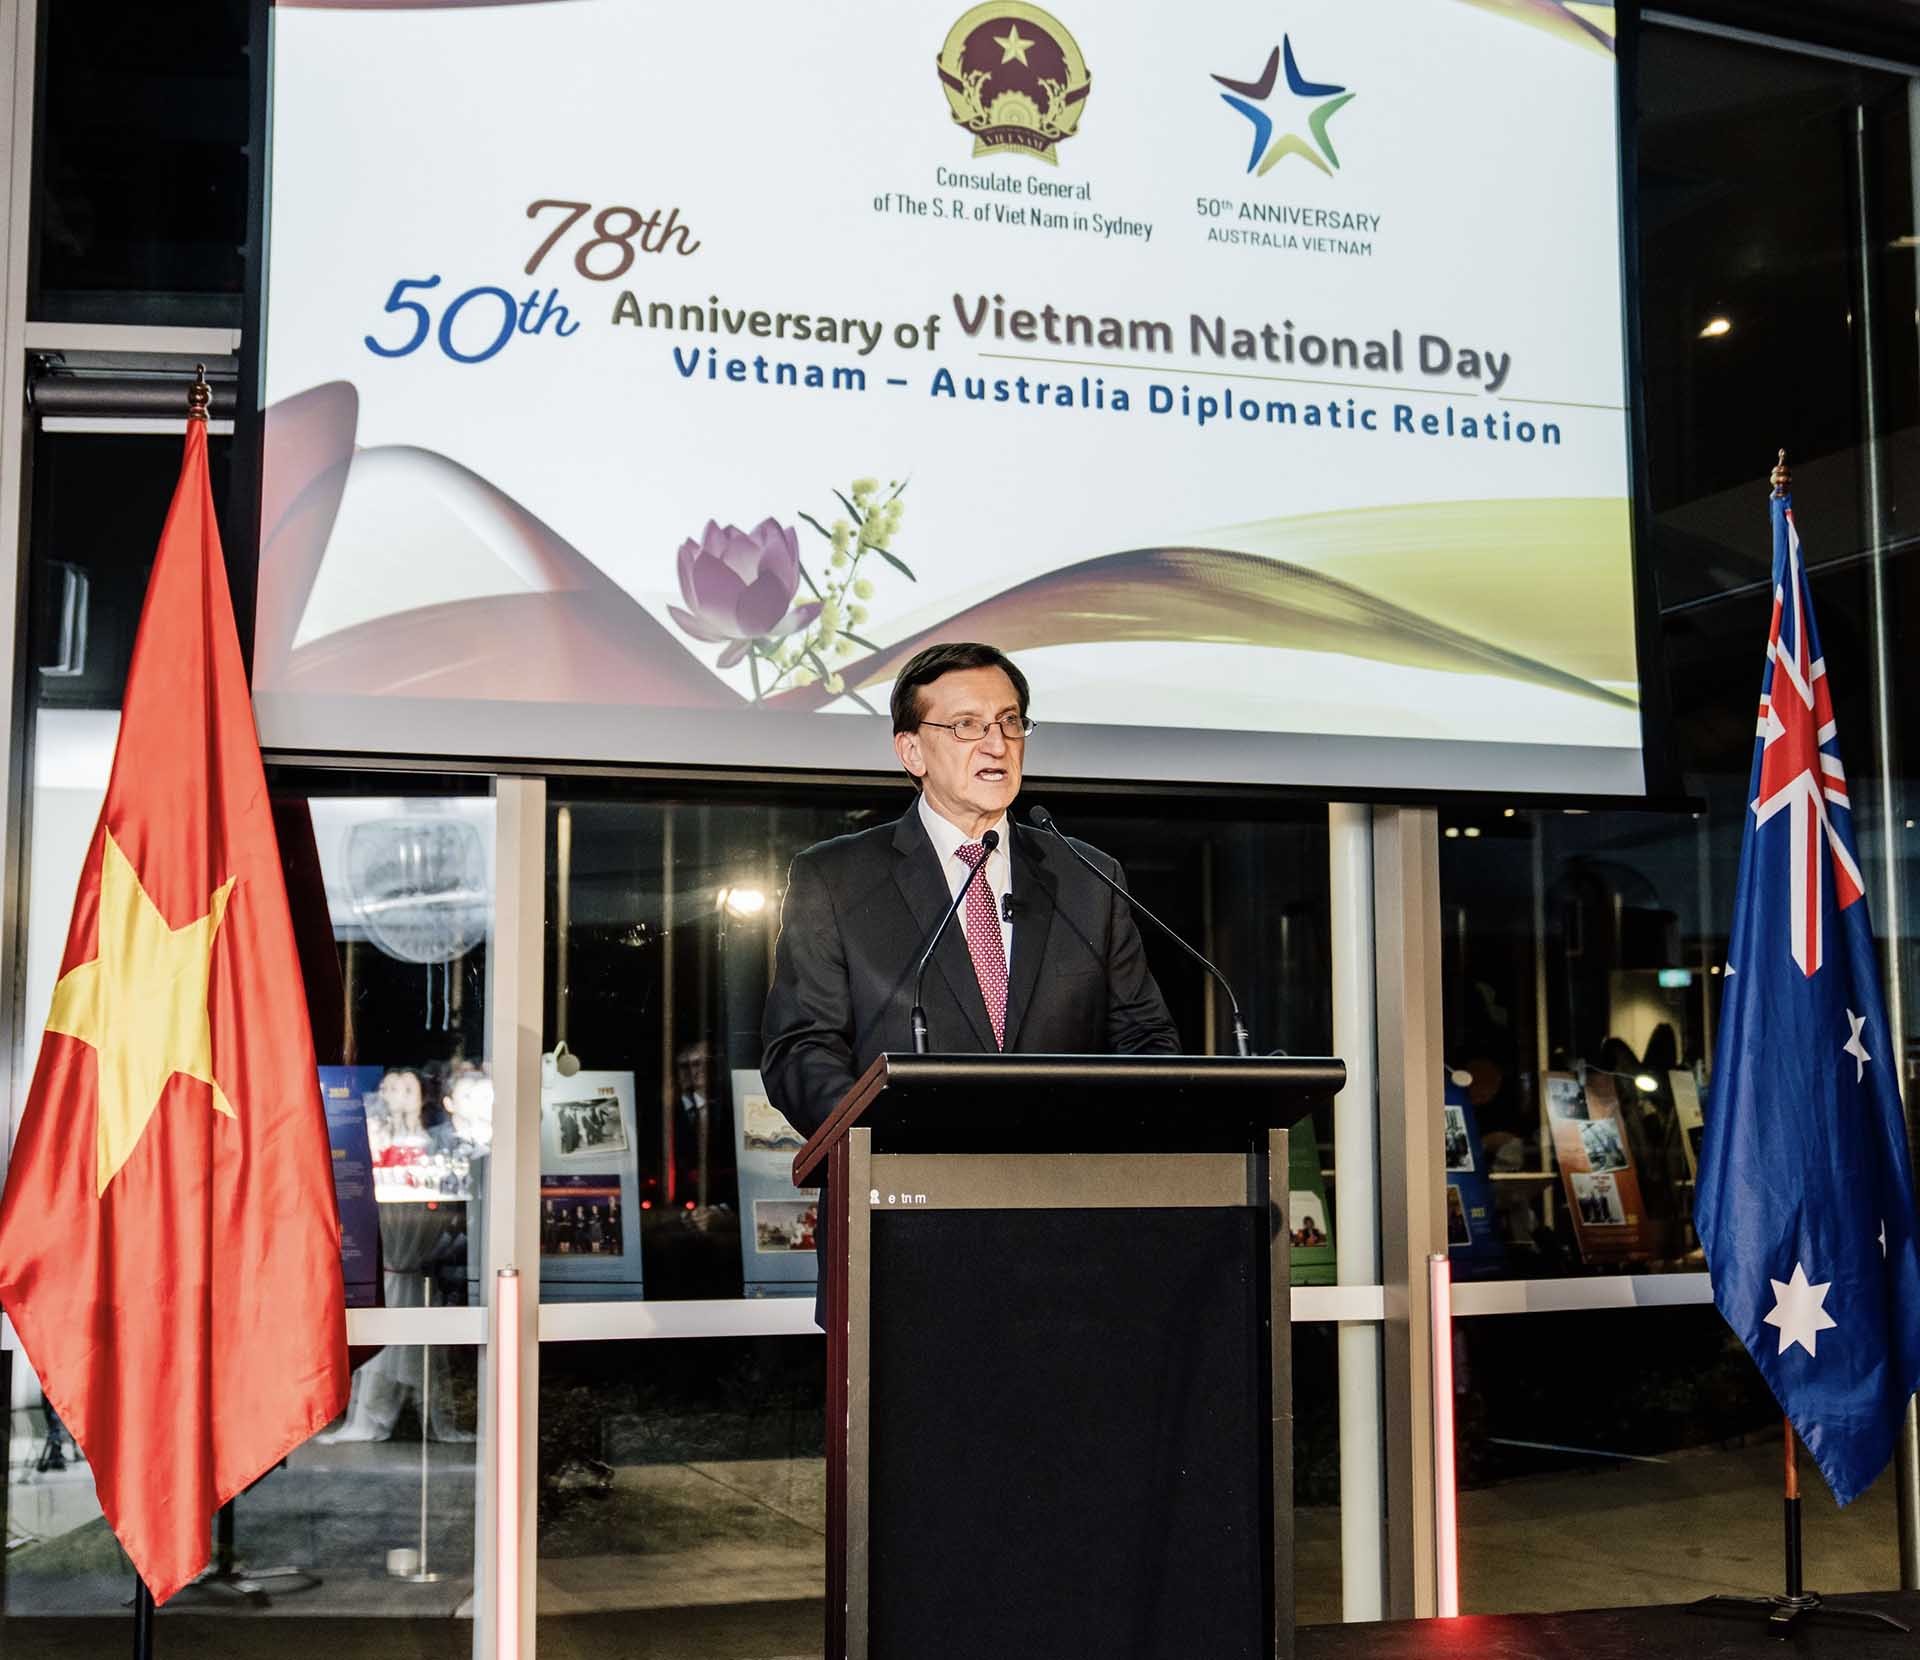 Ông Ron Hoenig, Bộ trưởng phụ trách Chính quyền địa phương tiểu bang New South Wales, phát biểu tại buổi lễ.